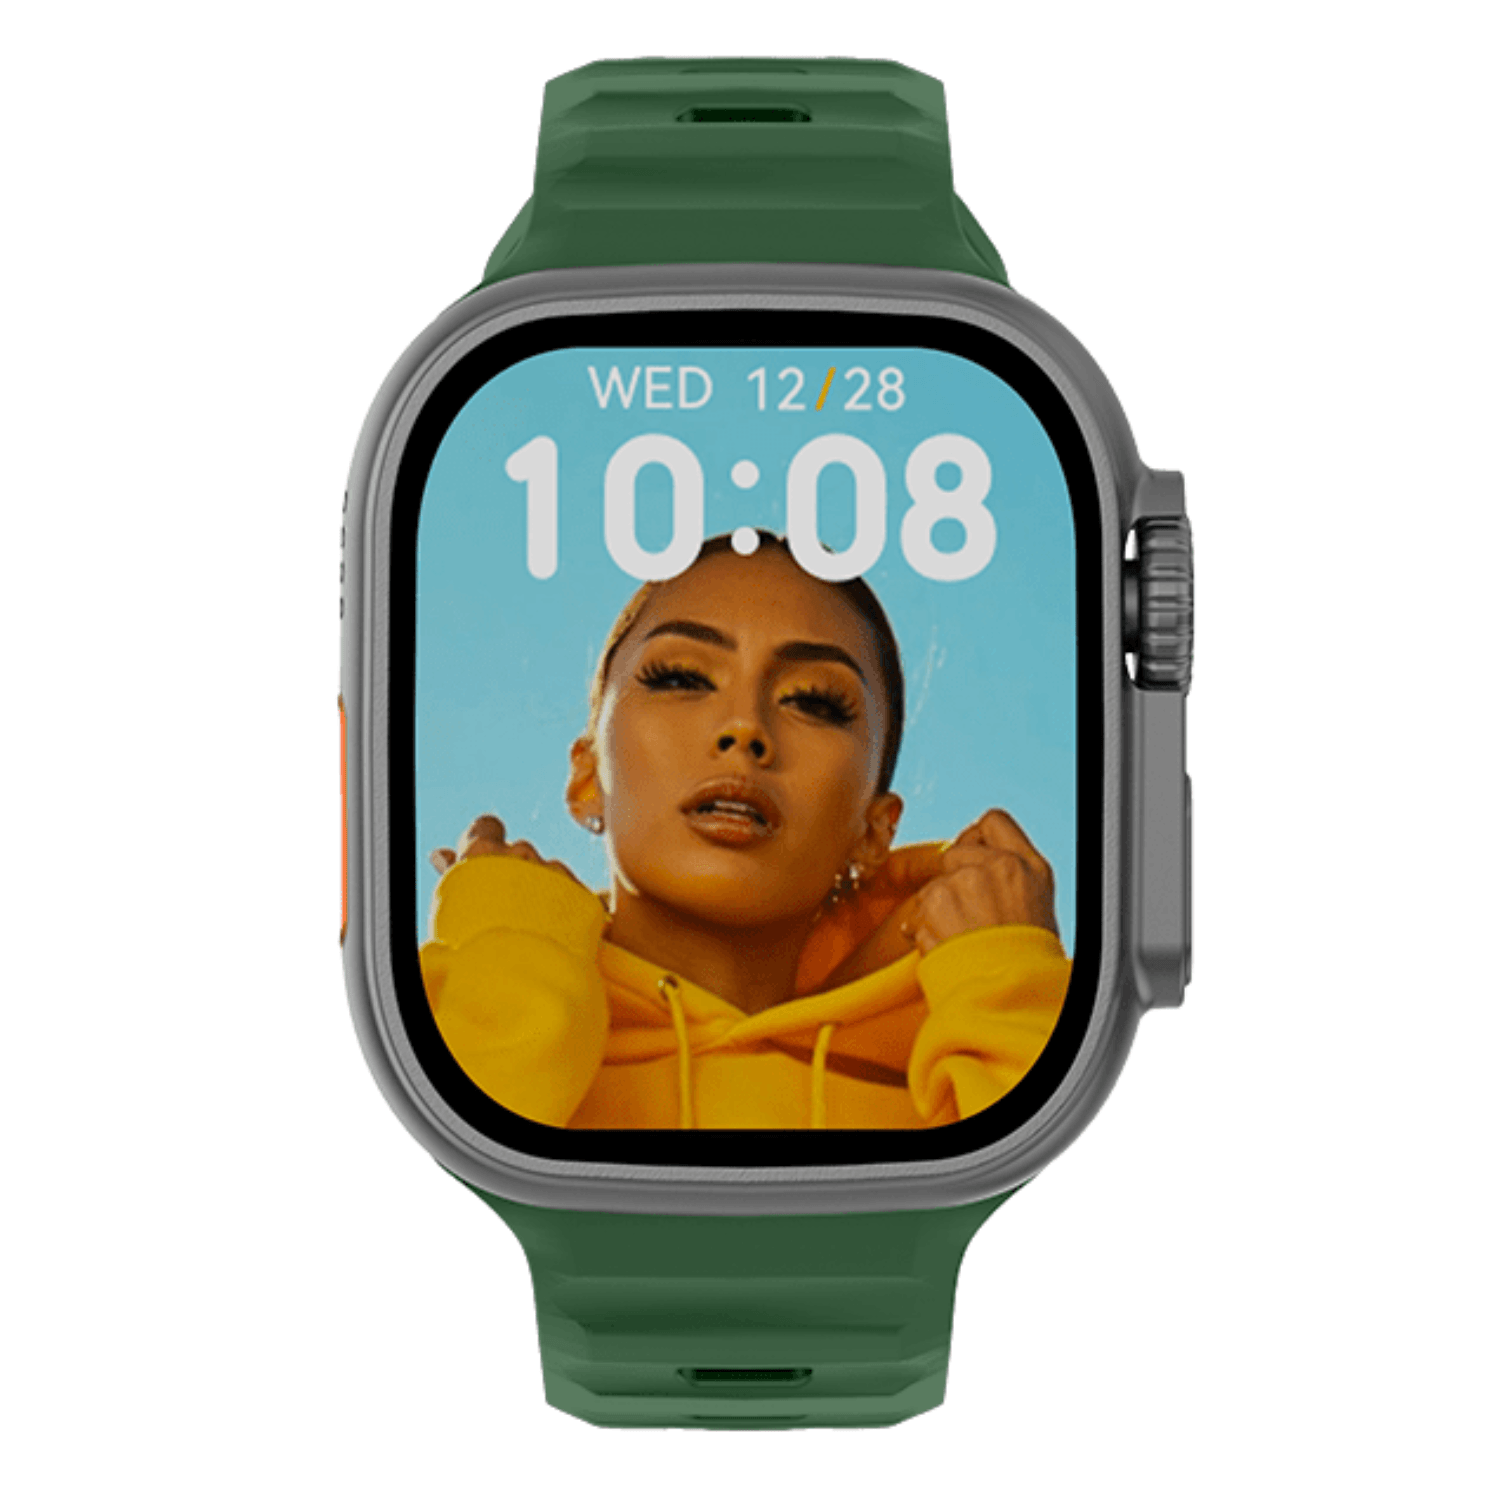 Ρολόι Smartwatch DAS4 SU08 203065028 με πράσινο λουράκι σιλικόνης.